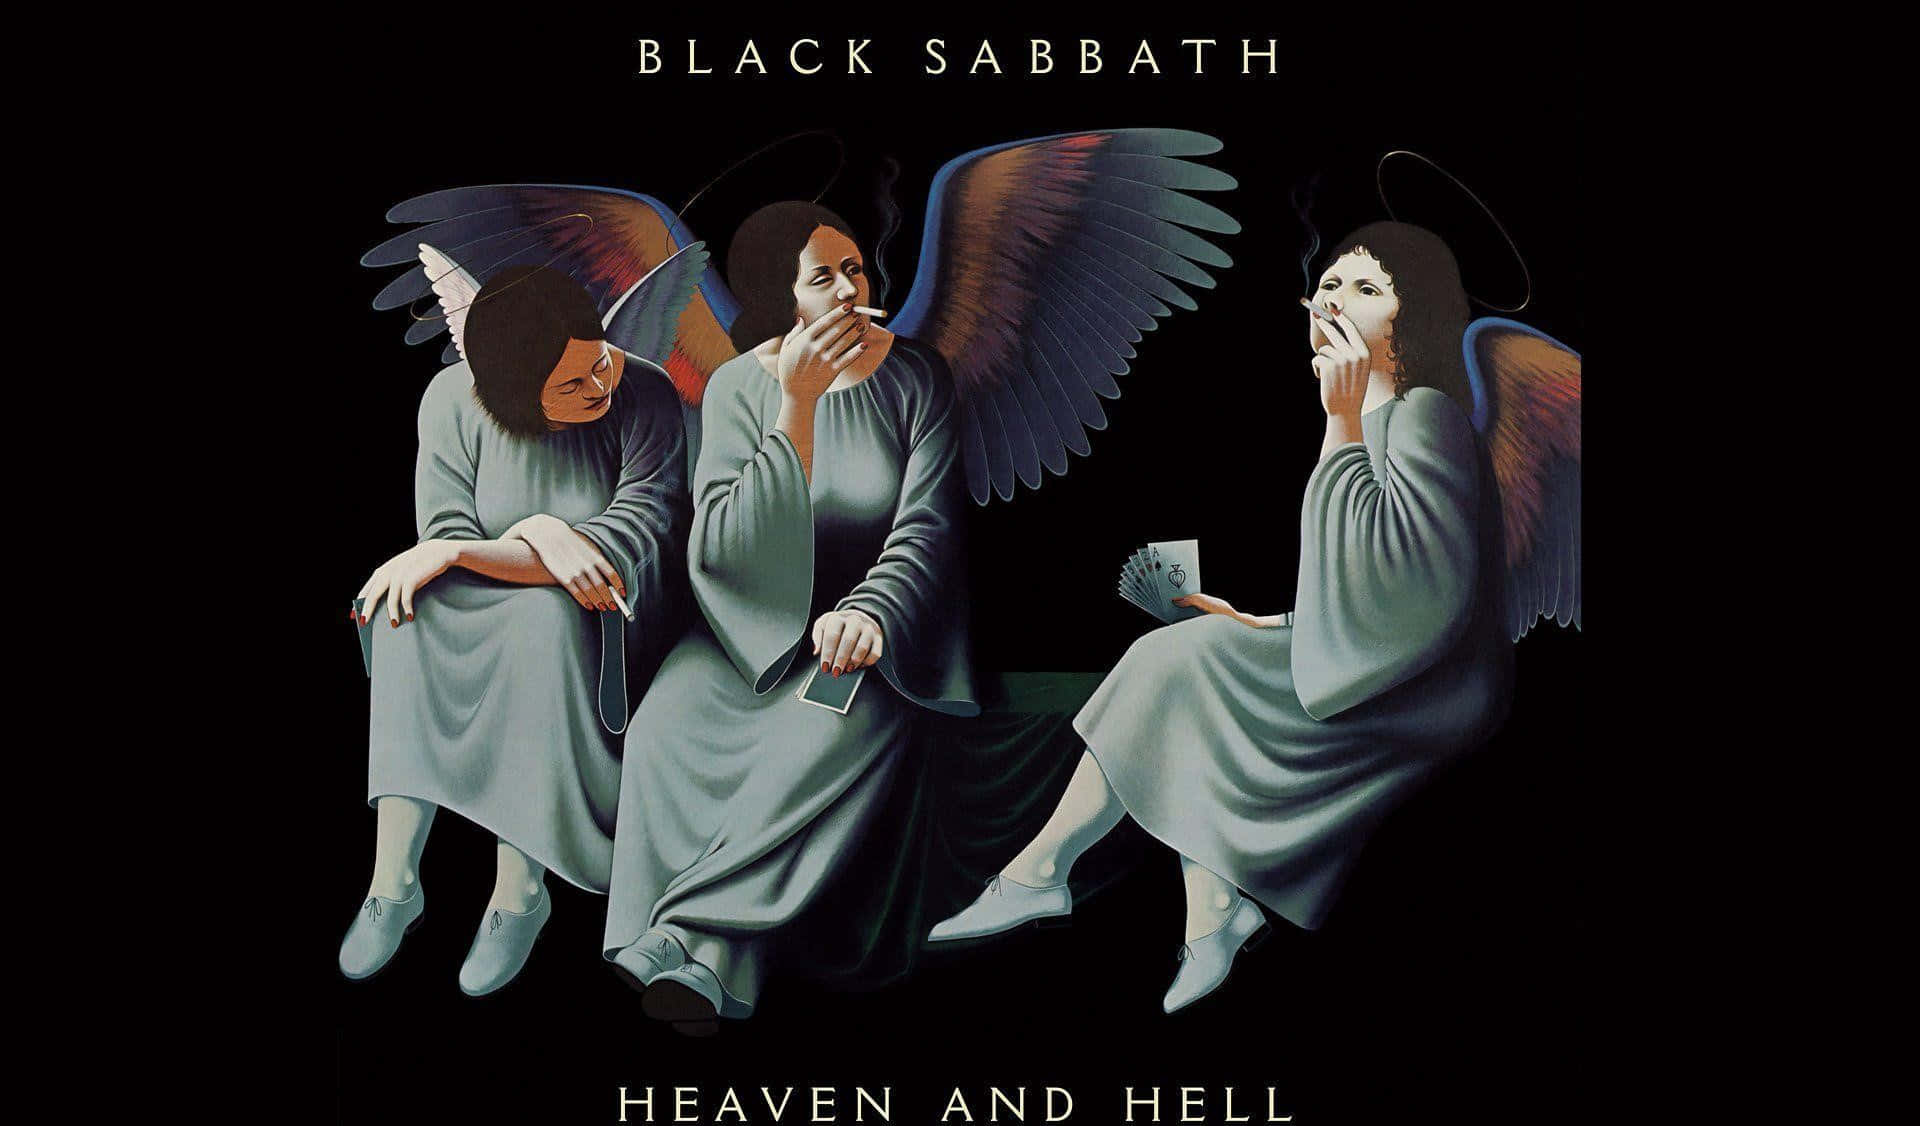 Black Sabbath Heavenand Hell Album Cover Wallpaper